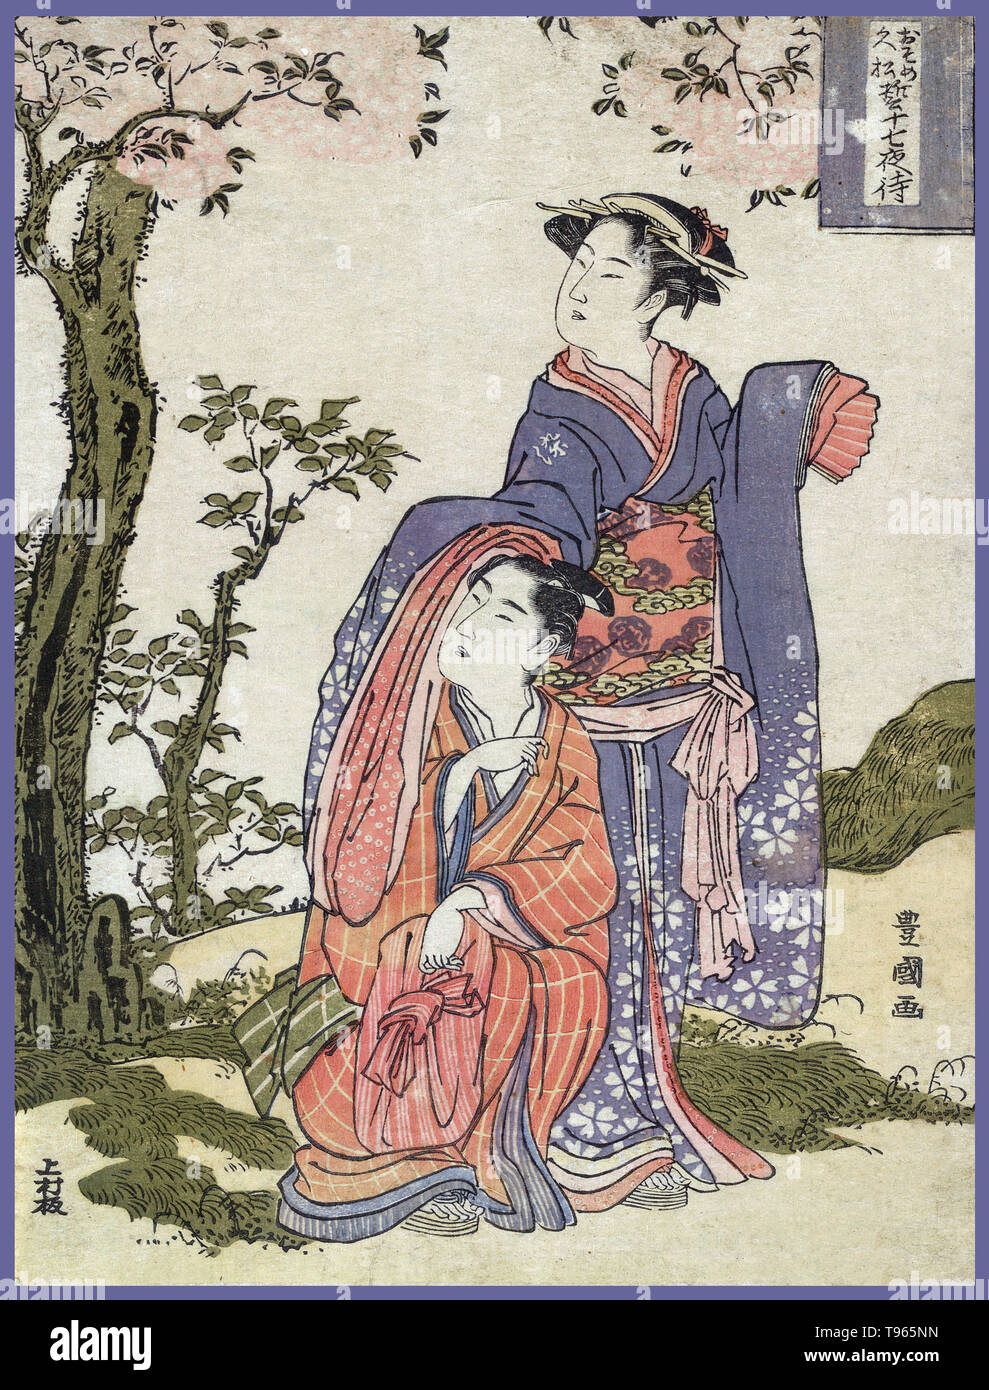 Osome jushichiya Hisamatsu chikai no Machi. Das Paar Osome und Hisamatsu Anzeigen der Mitte August Moon. Ukiyo-e (Bilder der fließenden Welt) ist ein Genre der japanischen Kunst, die vom 17. bis 19. Jahrhundert blühte. Ukiyo-e war zentral für die Wahrnehmung des Westens für Japanische Kunst im späten 19. Jahrhundert. Aus den 1870er Jahren Japonismus zu einem bedeutenden Trend und hatte einen starken Einfluss auf die frühen Impressionisten, sowie Post-Impressionists und Jugendstil Künstler. Stockfoto